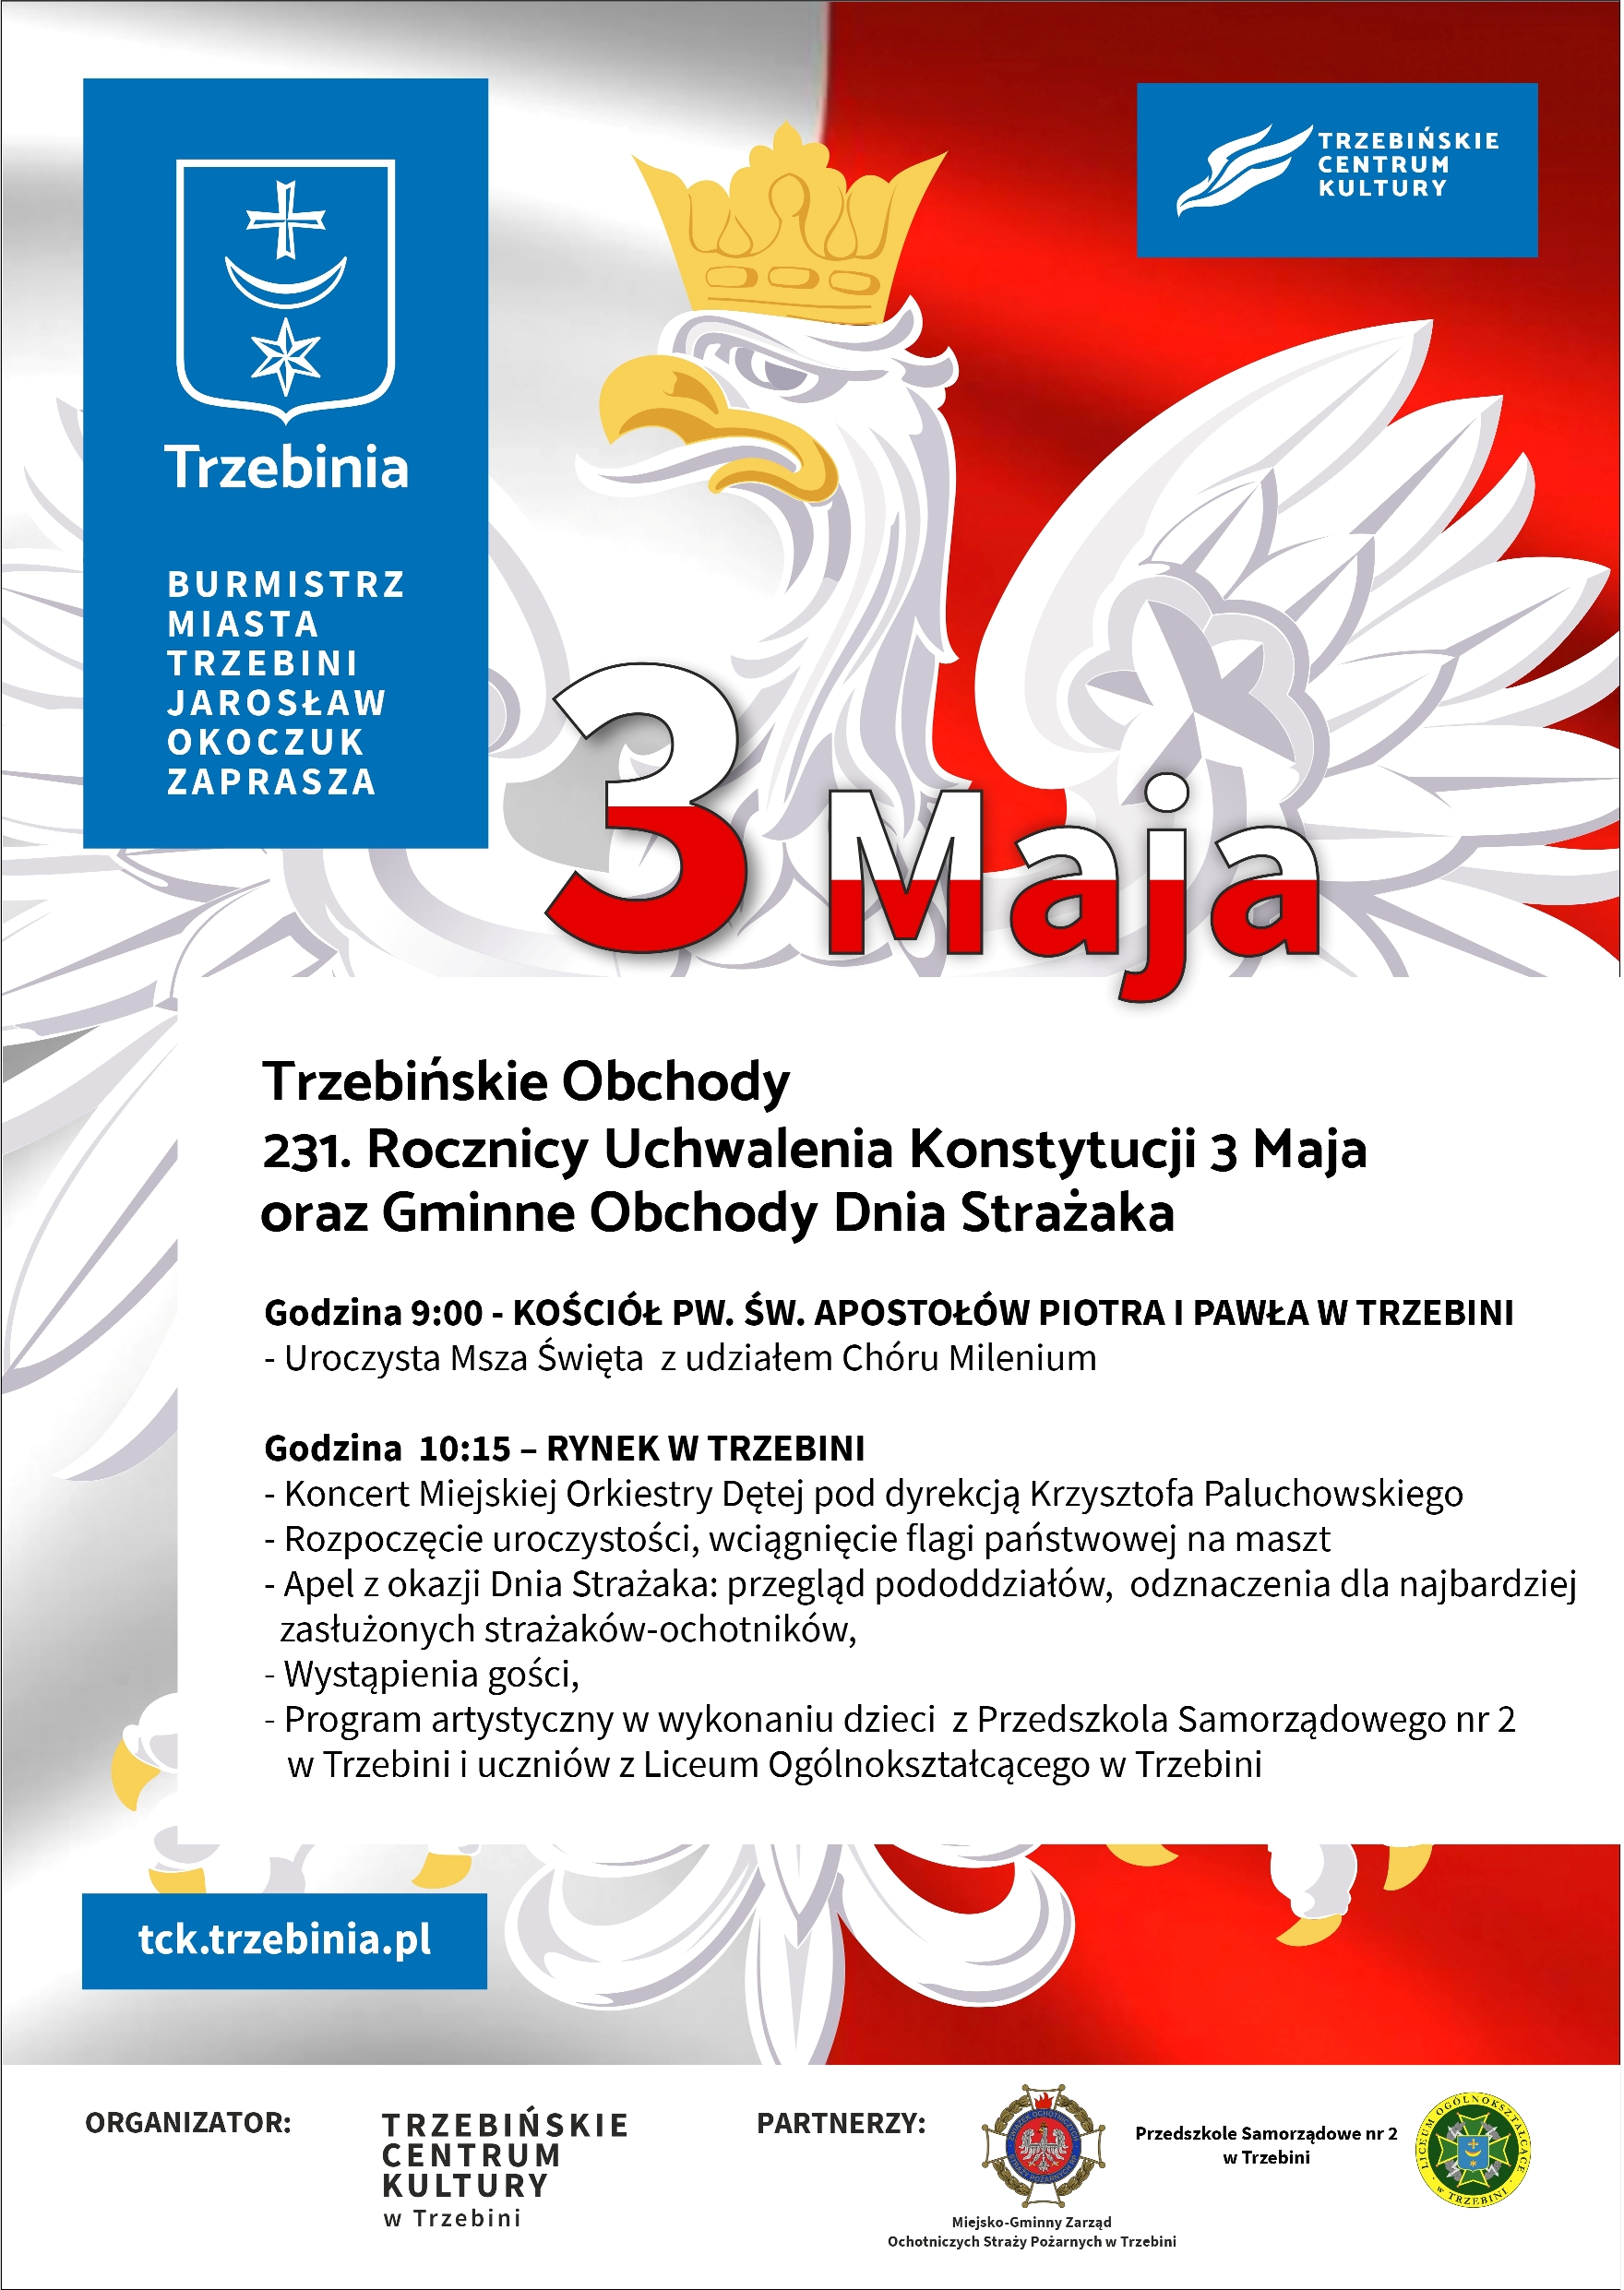 Trzebińskie Obchody 231 Rocznicy konstytucji 3 Maja  oraz Gminne Obchody Dnia Strażaka